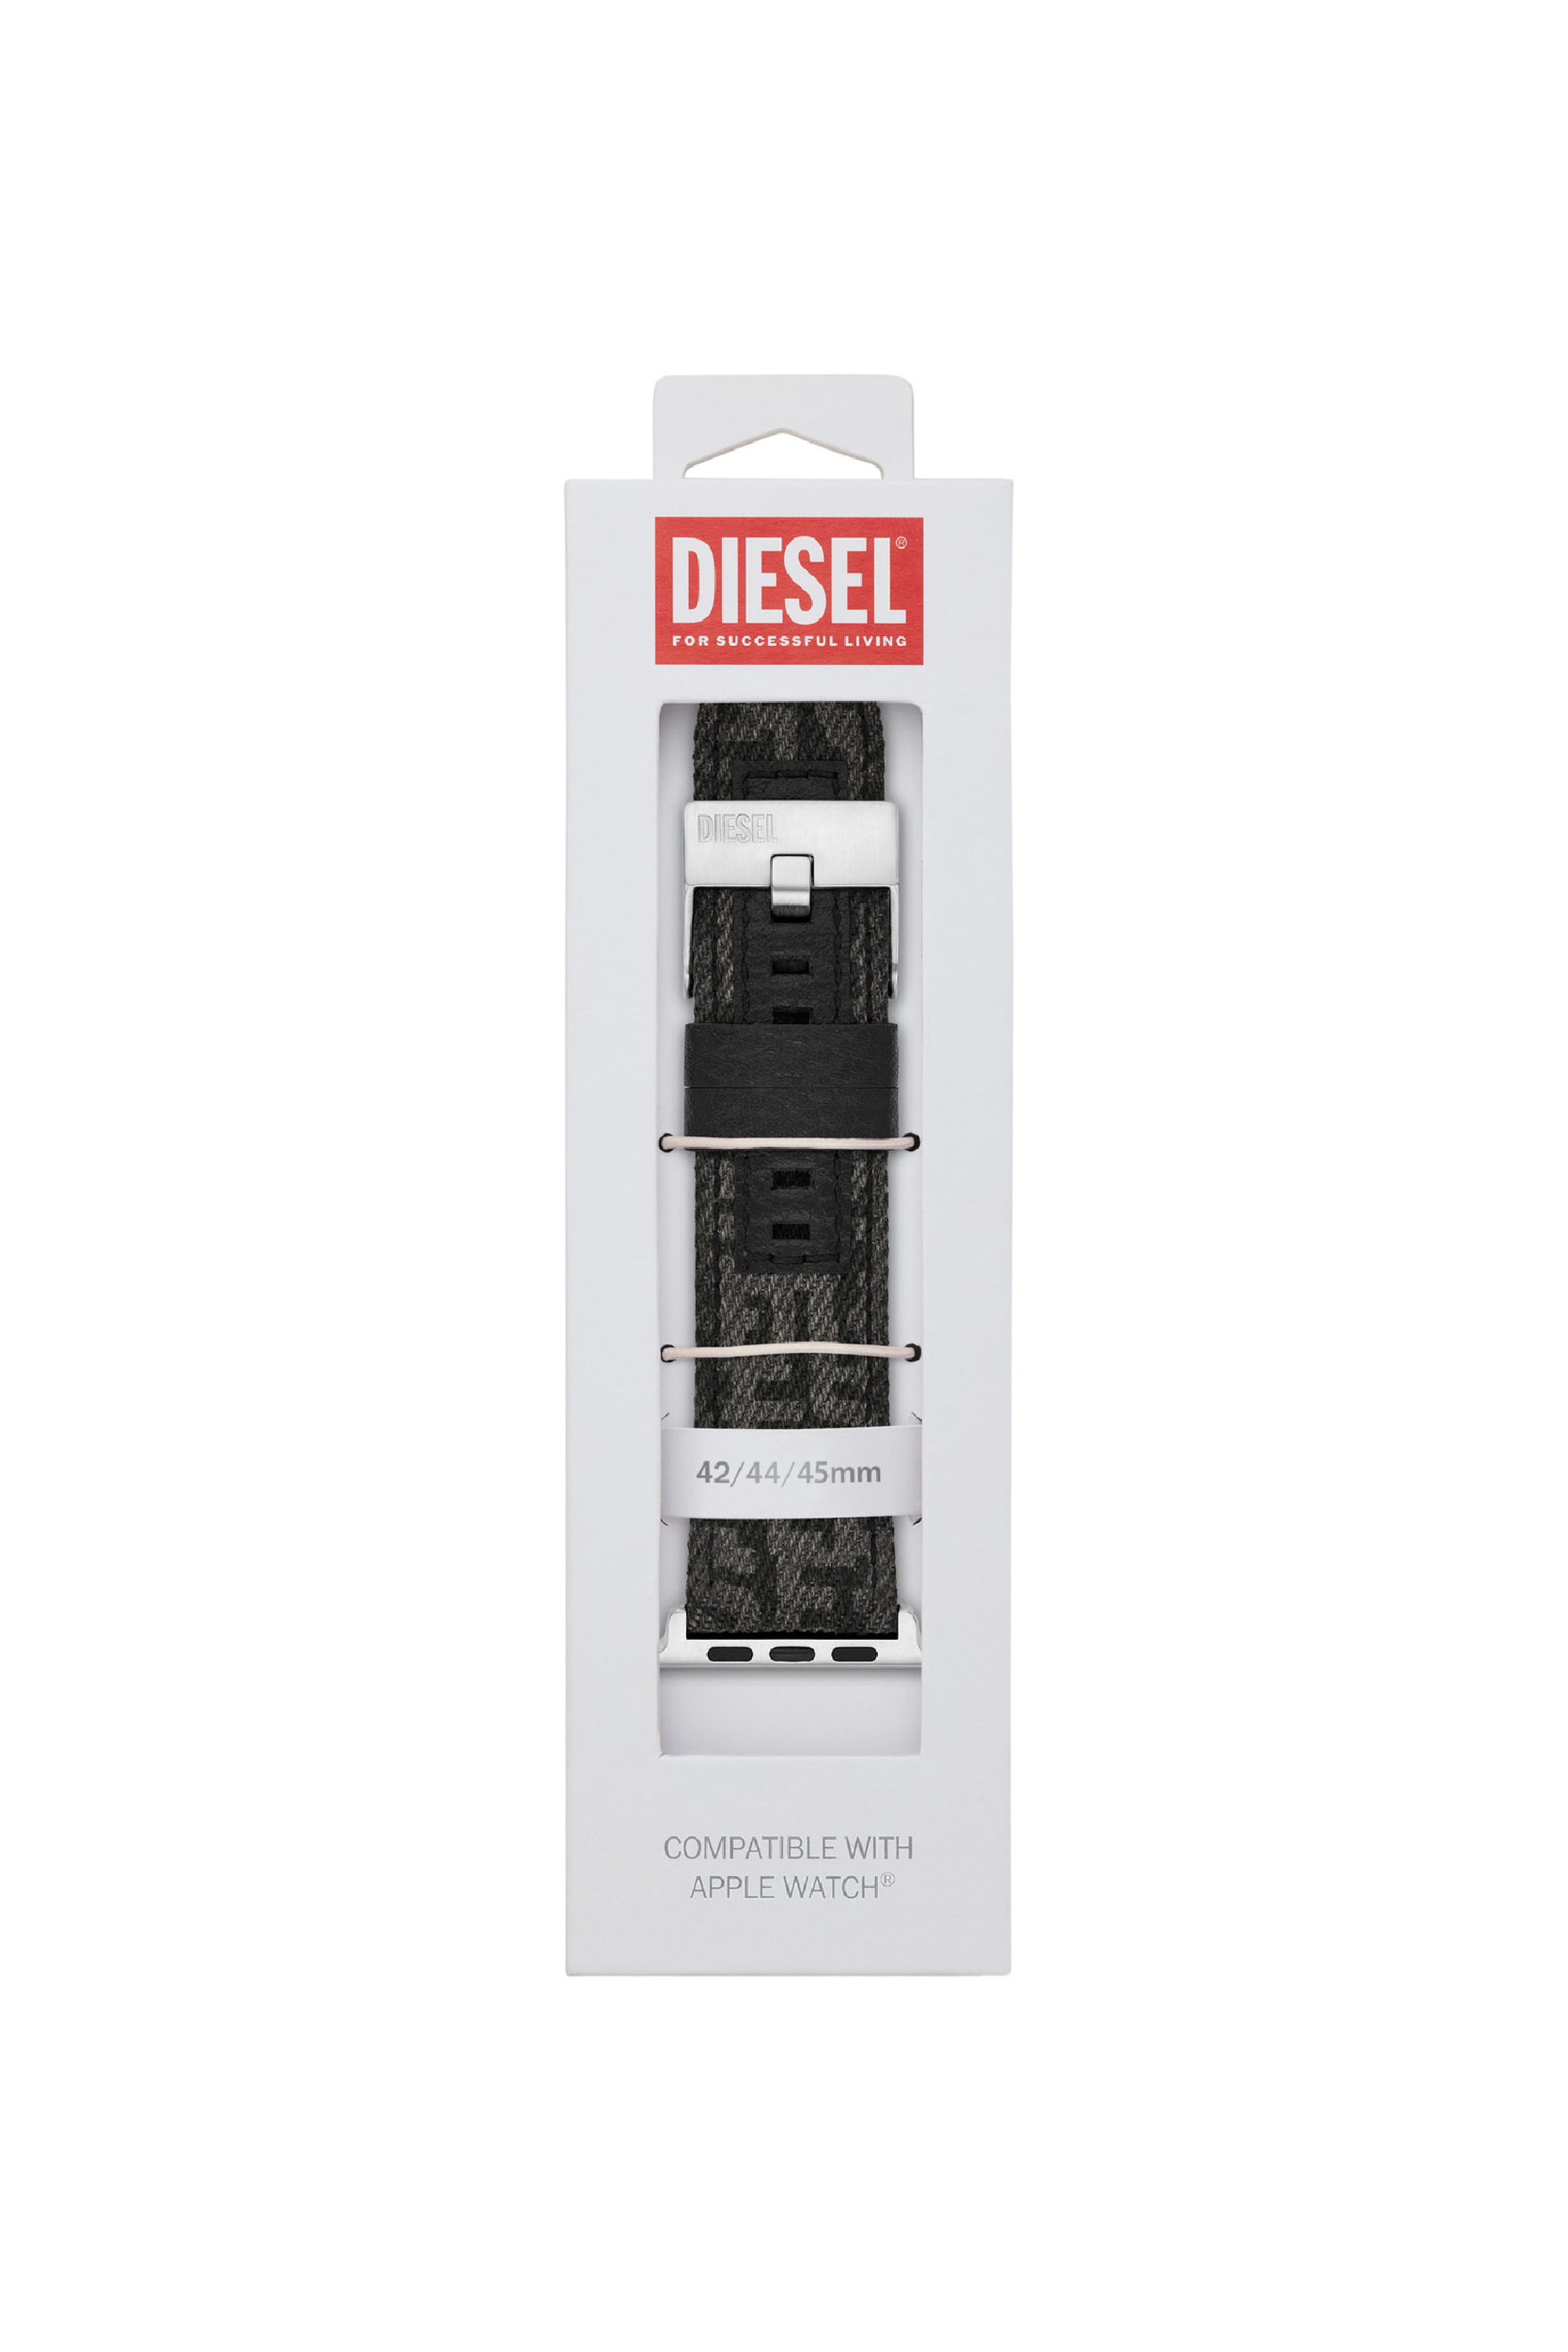 Diesel - DSS0012, Nero - Image 2